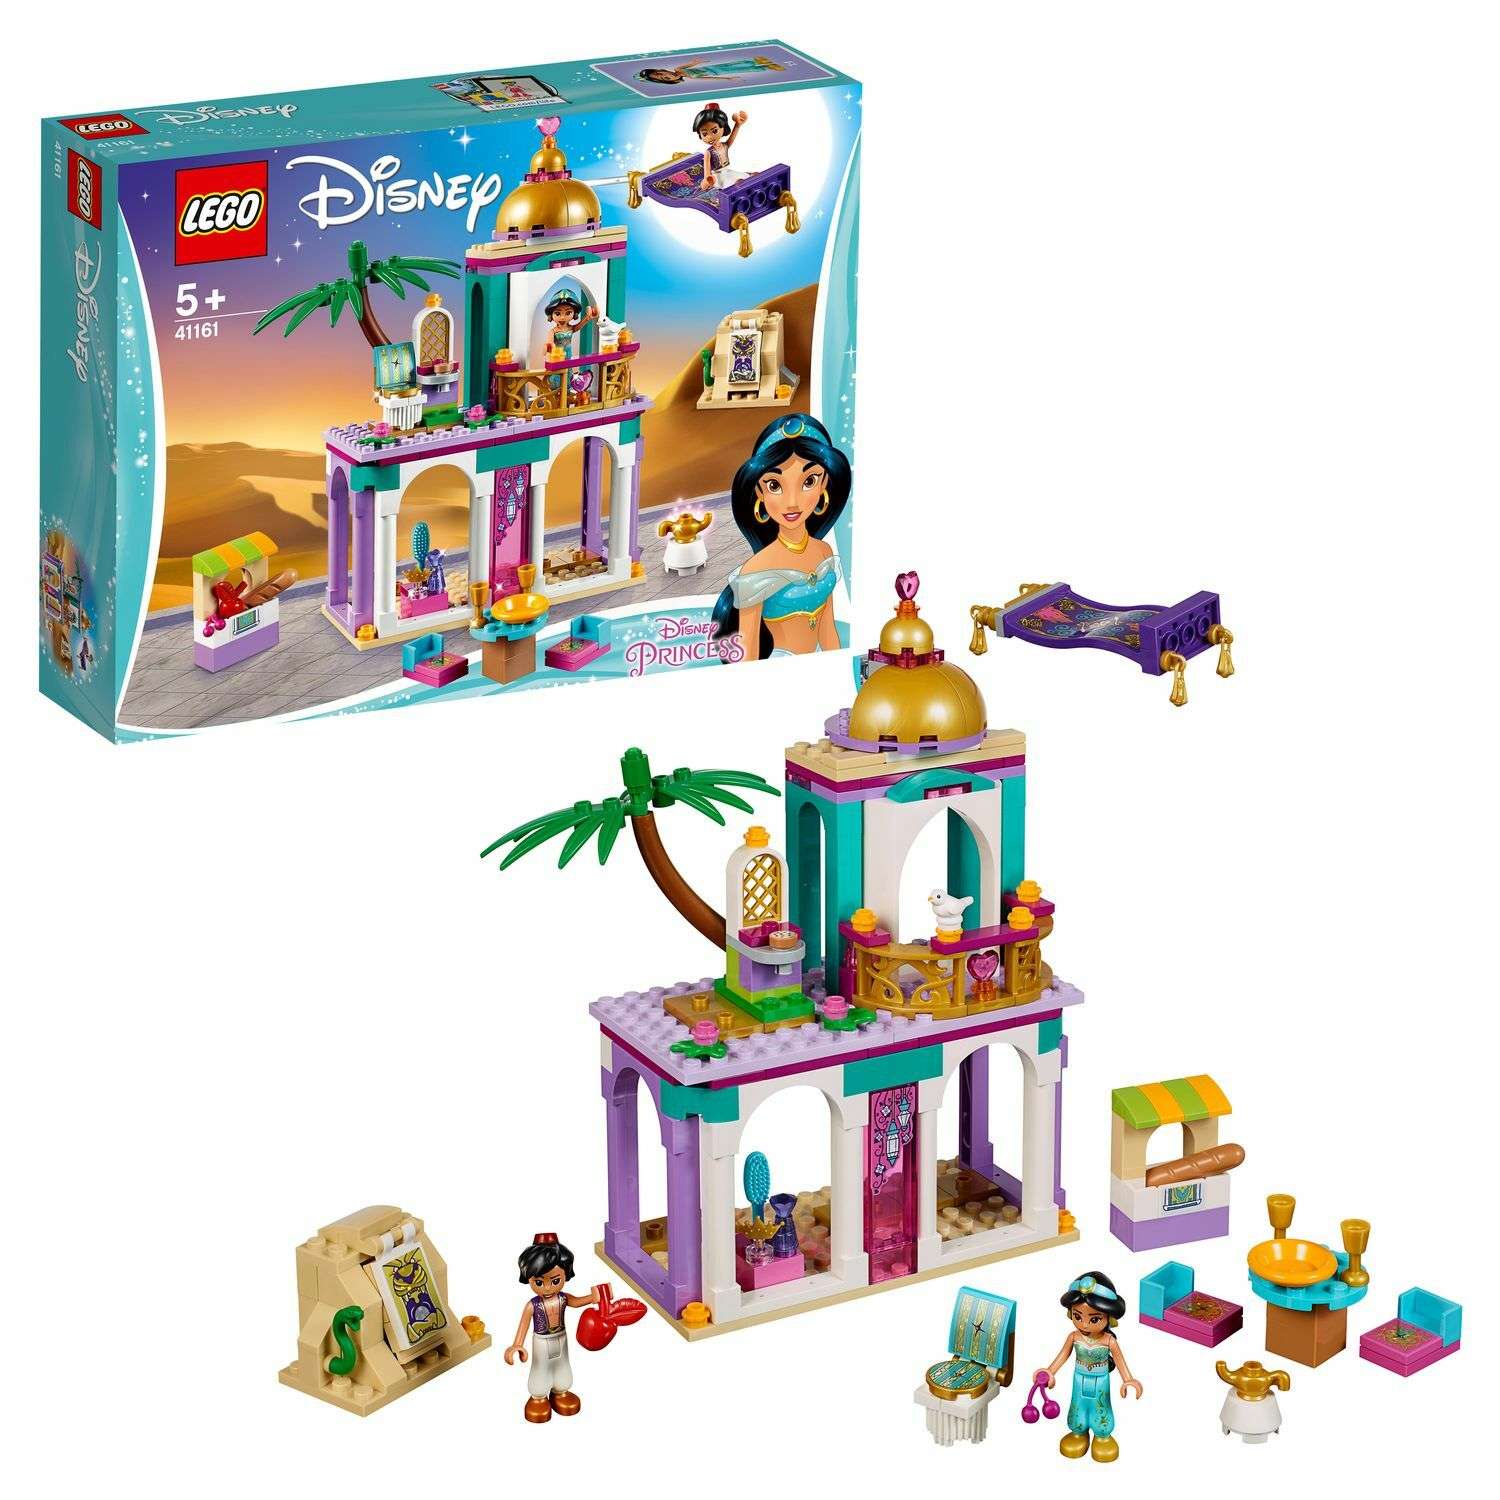 Конструктор LEGO Disney Princess Приключения Аладдина и Жасмин во дворце 41161 - фото 1